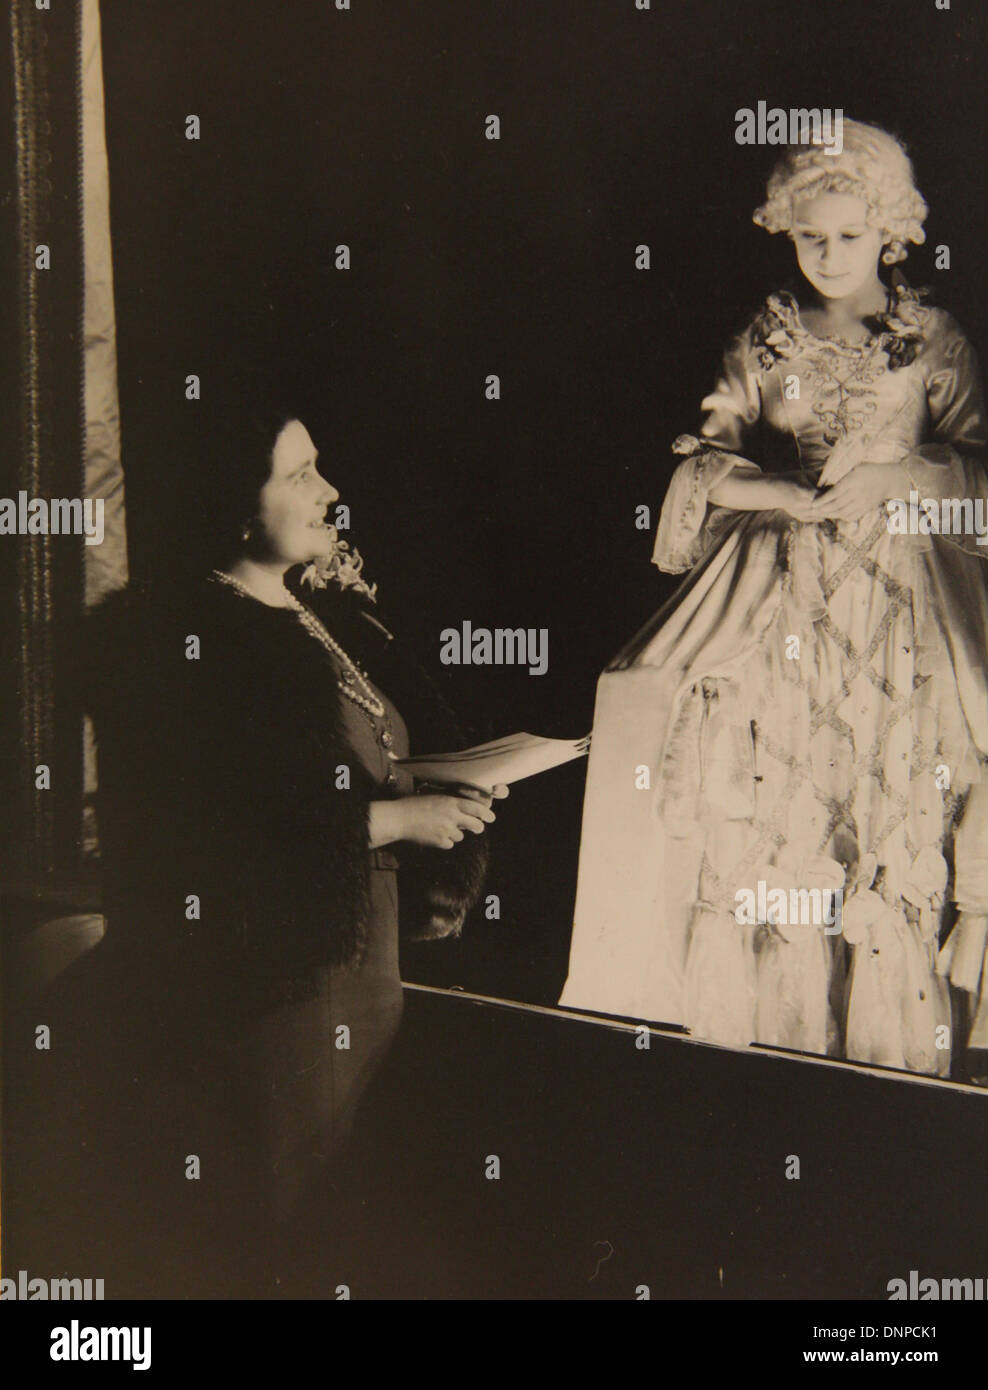 Recueillir des photographie de la princesse Margaret (à droite) rencontre sa mère au cours de la jouer Cendrillon, 1941 Banque D'Images